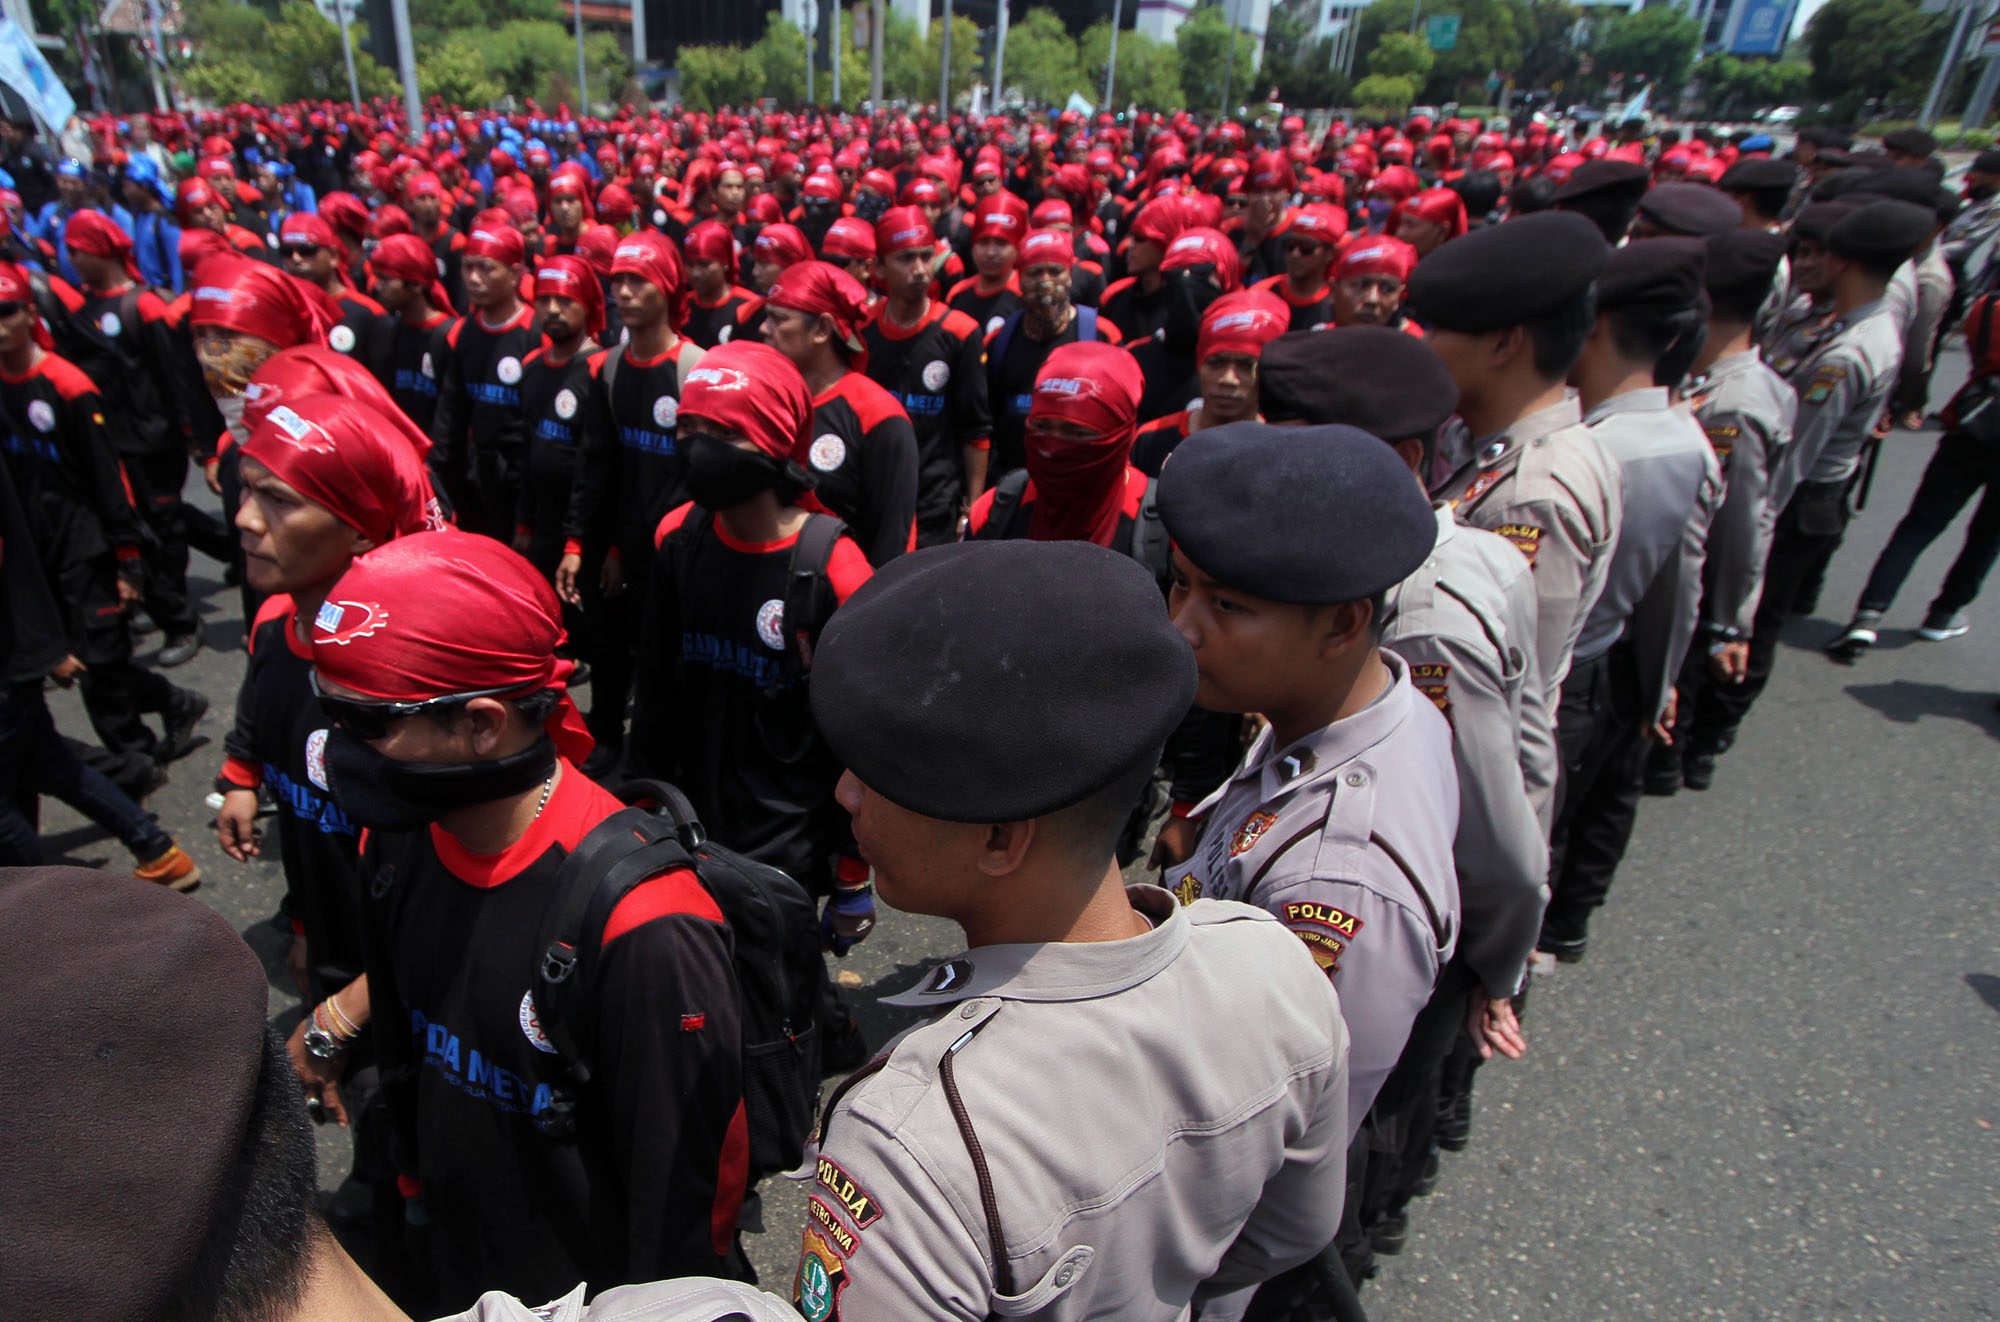 Indonesia wRap: Aturan Ahok soal demonstrasi, bandara Bali ditutup